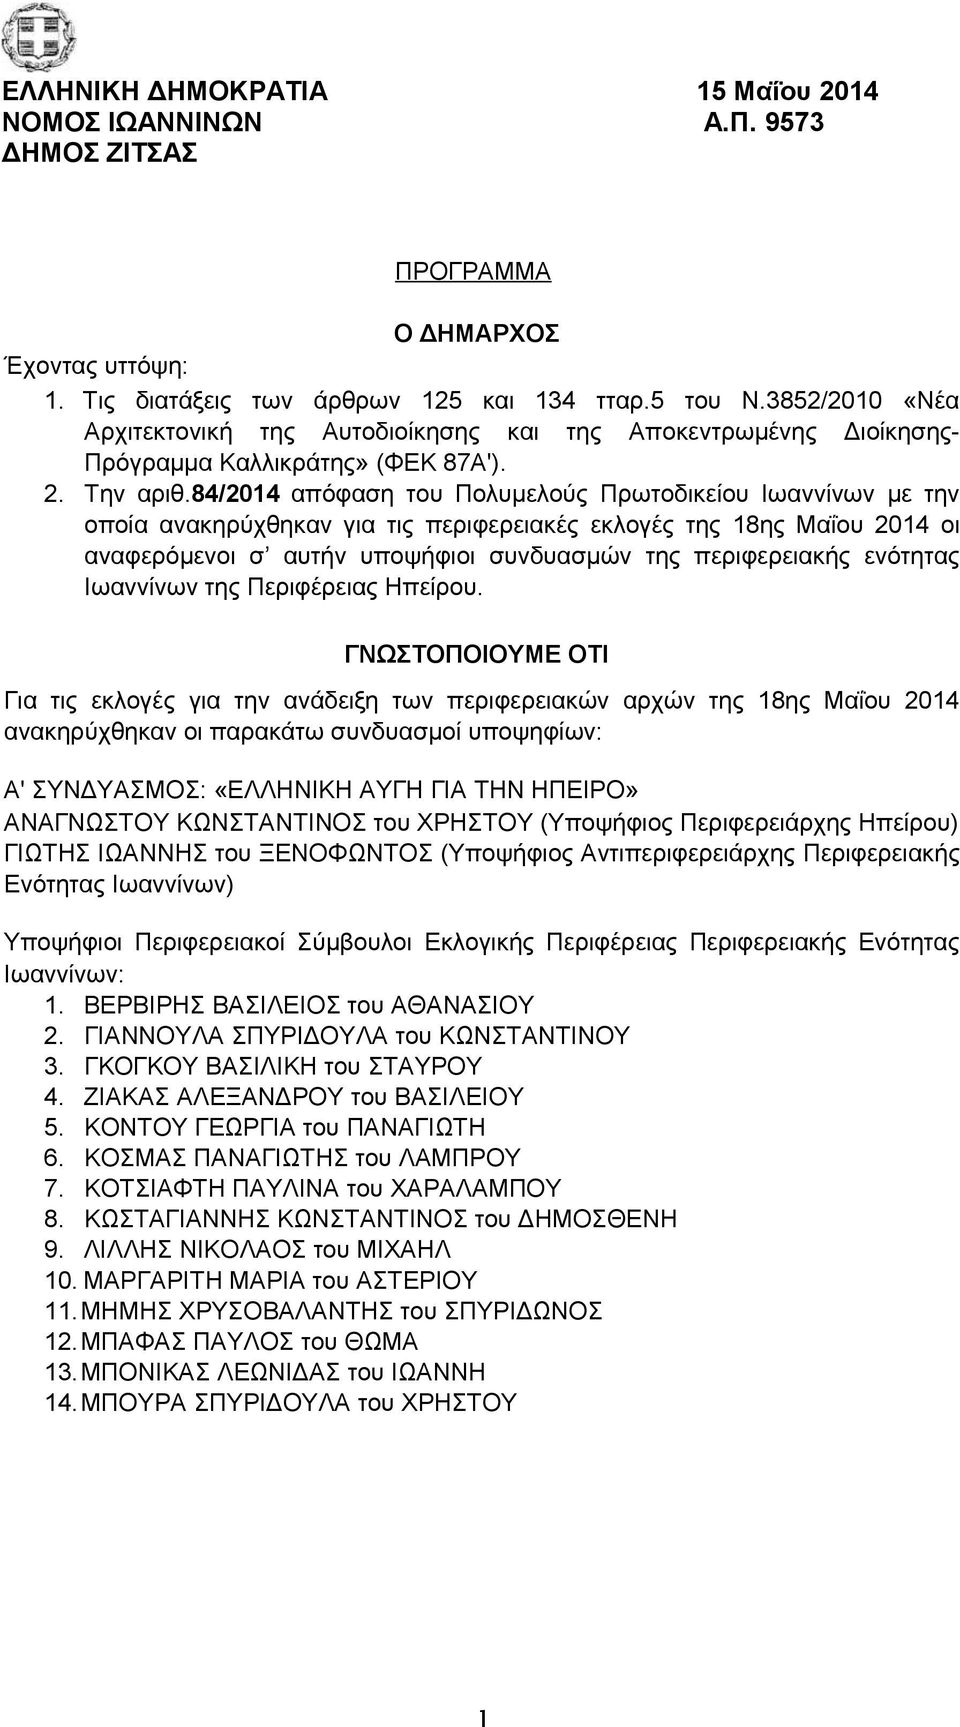 84/2014 απόφαση του Πολυμελούς Πρωτοδικείου Ιωαννίνων με την οποία ανακηρύχθηκαν για τις περιφερειακές εκλογές της 18ης Μαΐου 2014 οι αναφερόμενοι σ αυτήν υποψήφιοι συνδυασμών της περιφερειακής